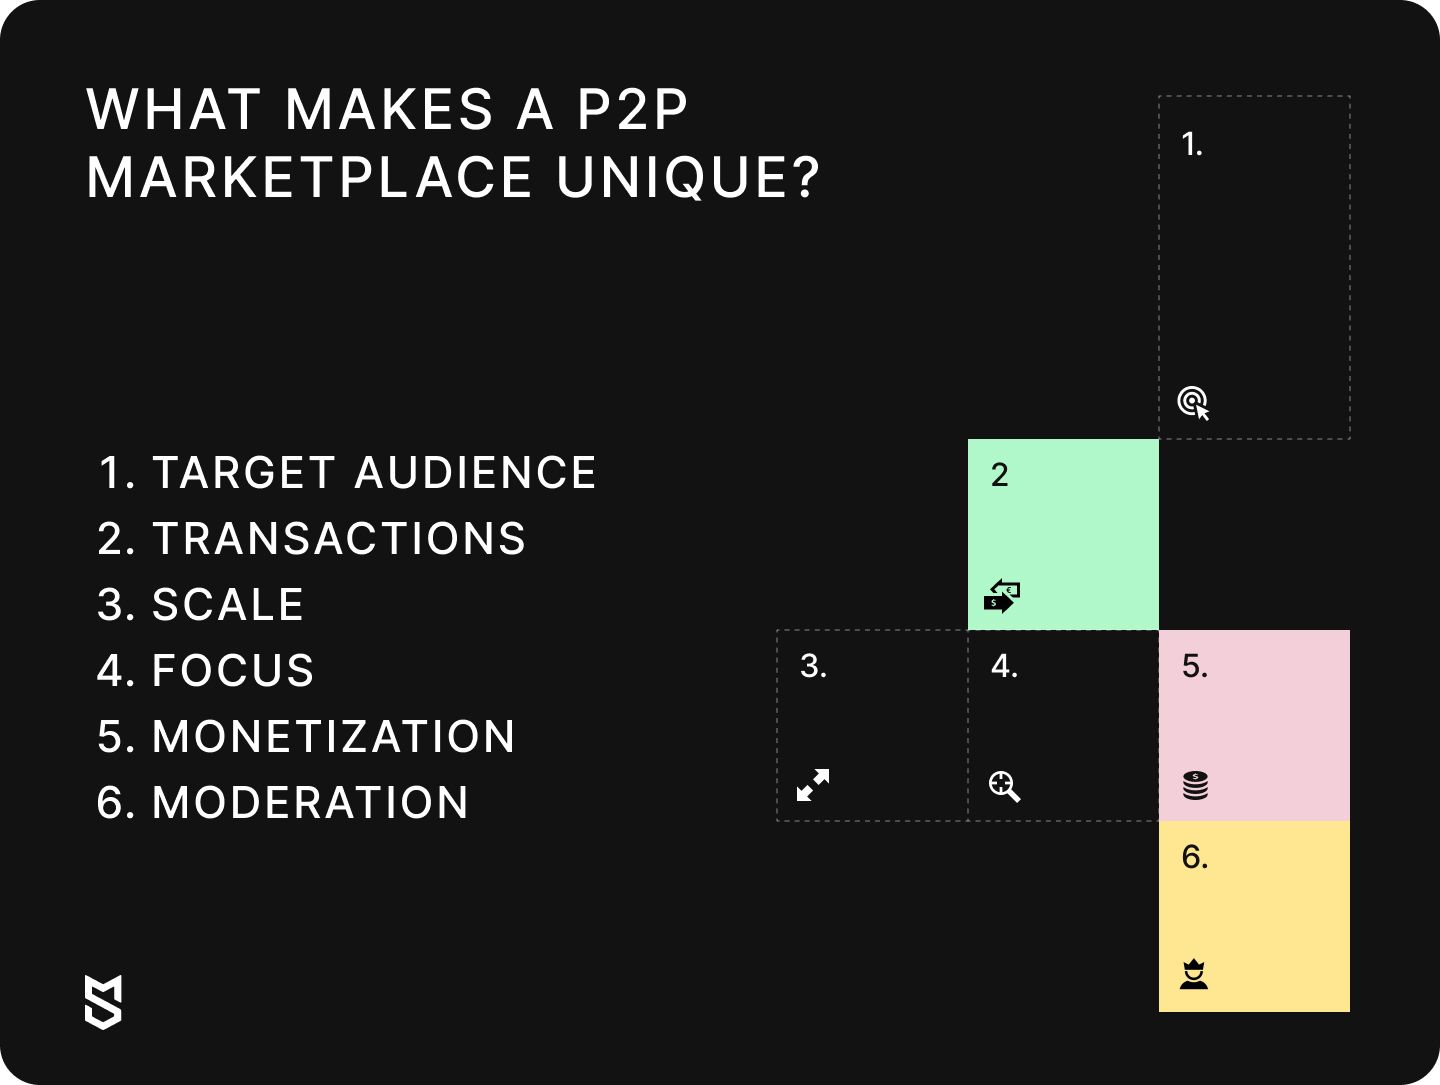 What makes a P2P marketplace unique?